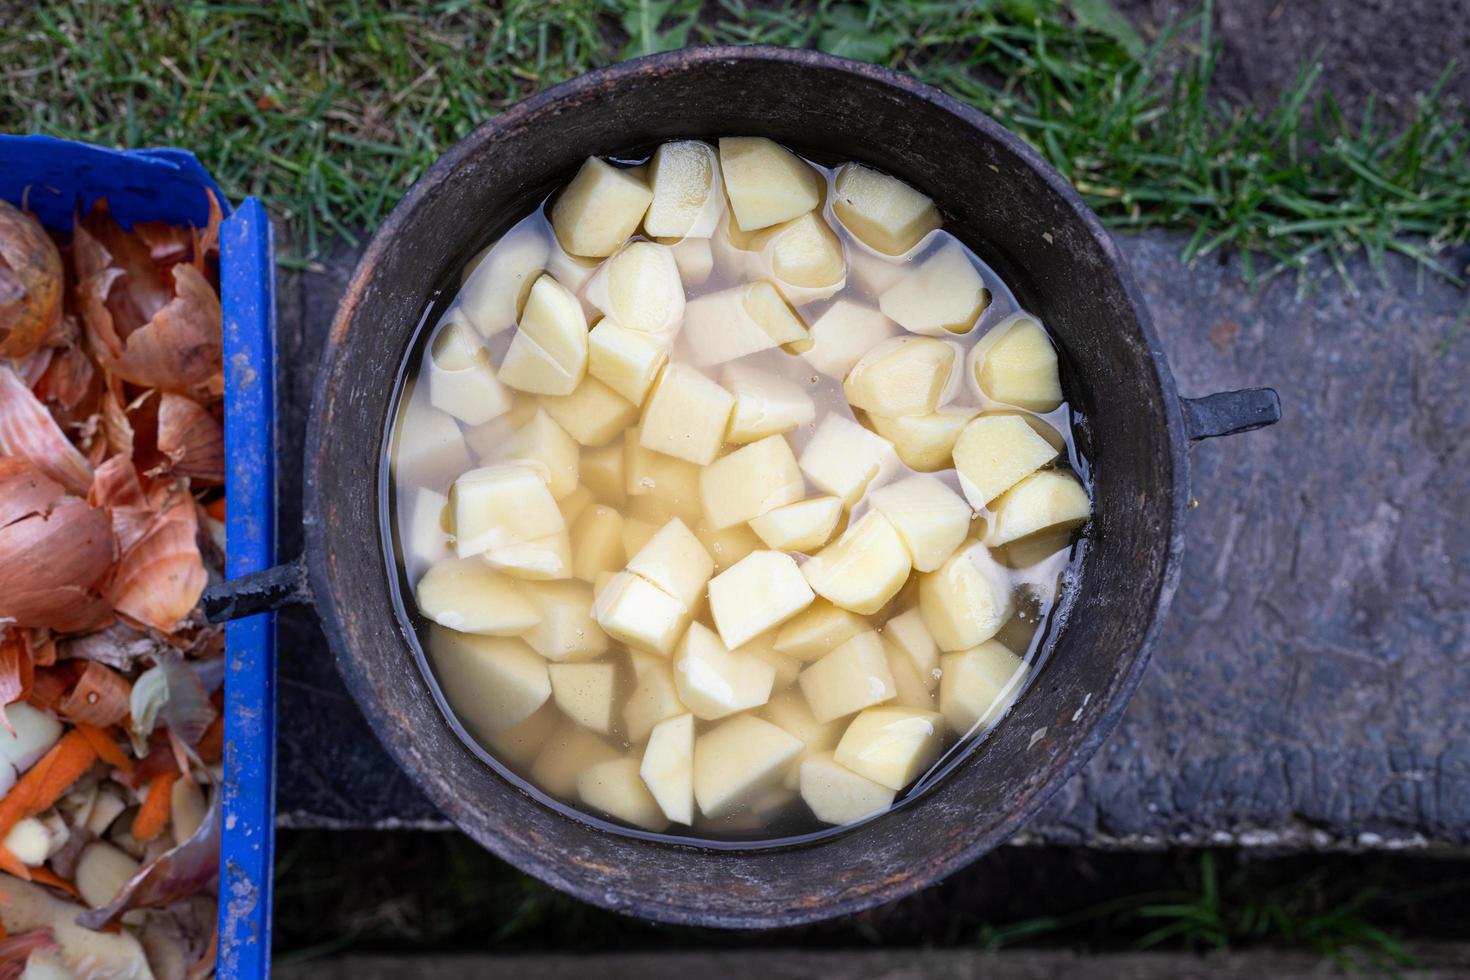 patatas peladas en una olla de hierro fundido. preparación de patatas al horno. plato tradicional polaco. vista superior. foto